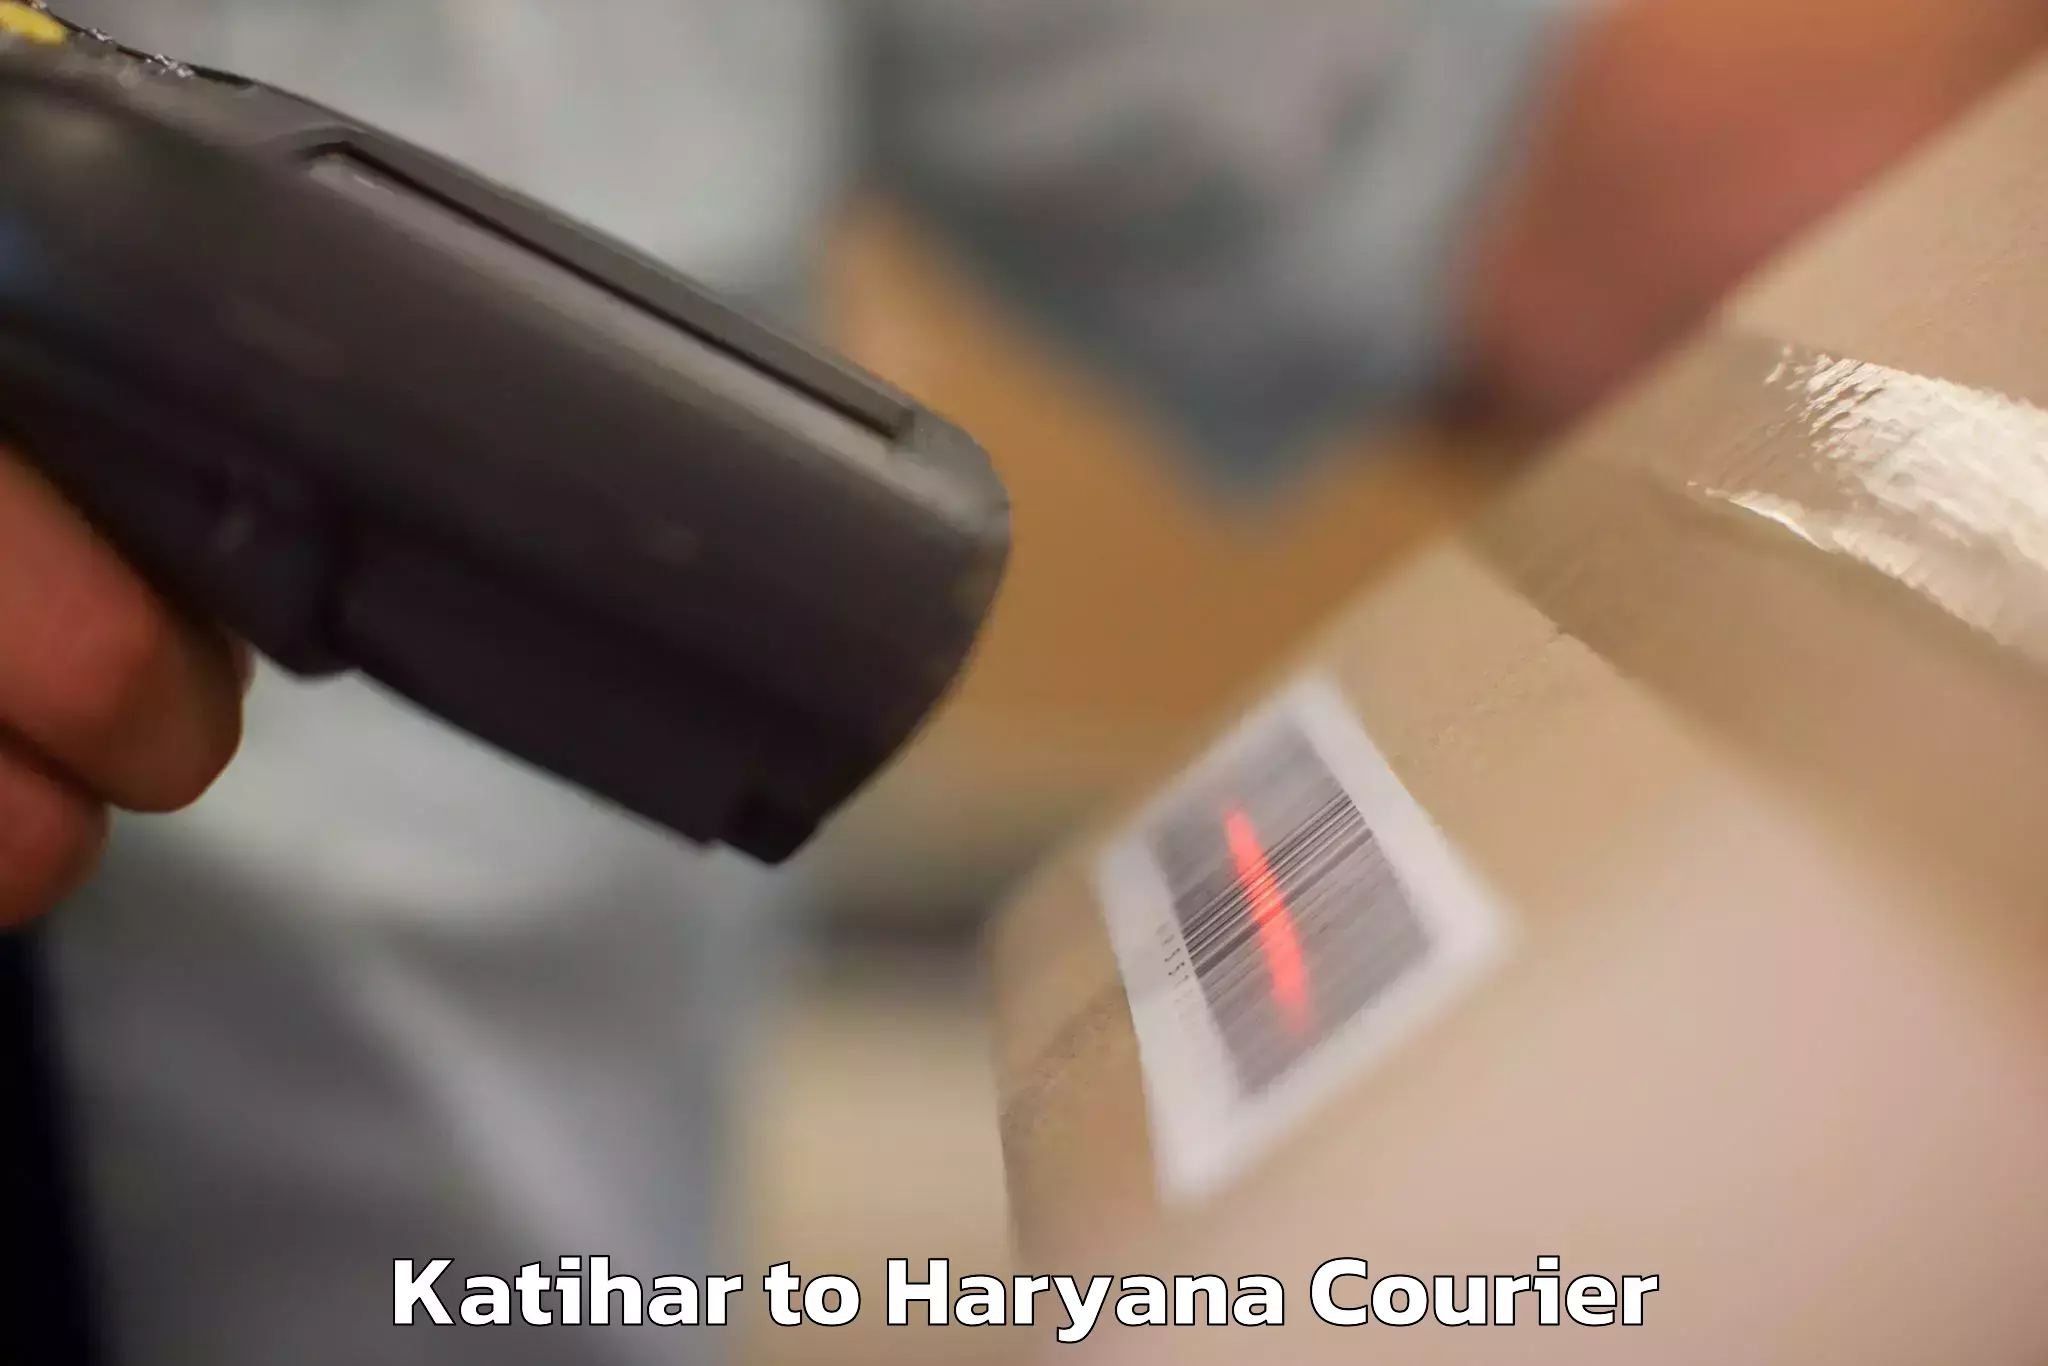 Luggage transit service Katihar to Haryana